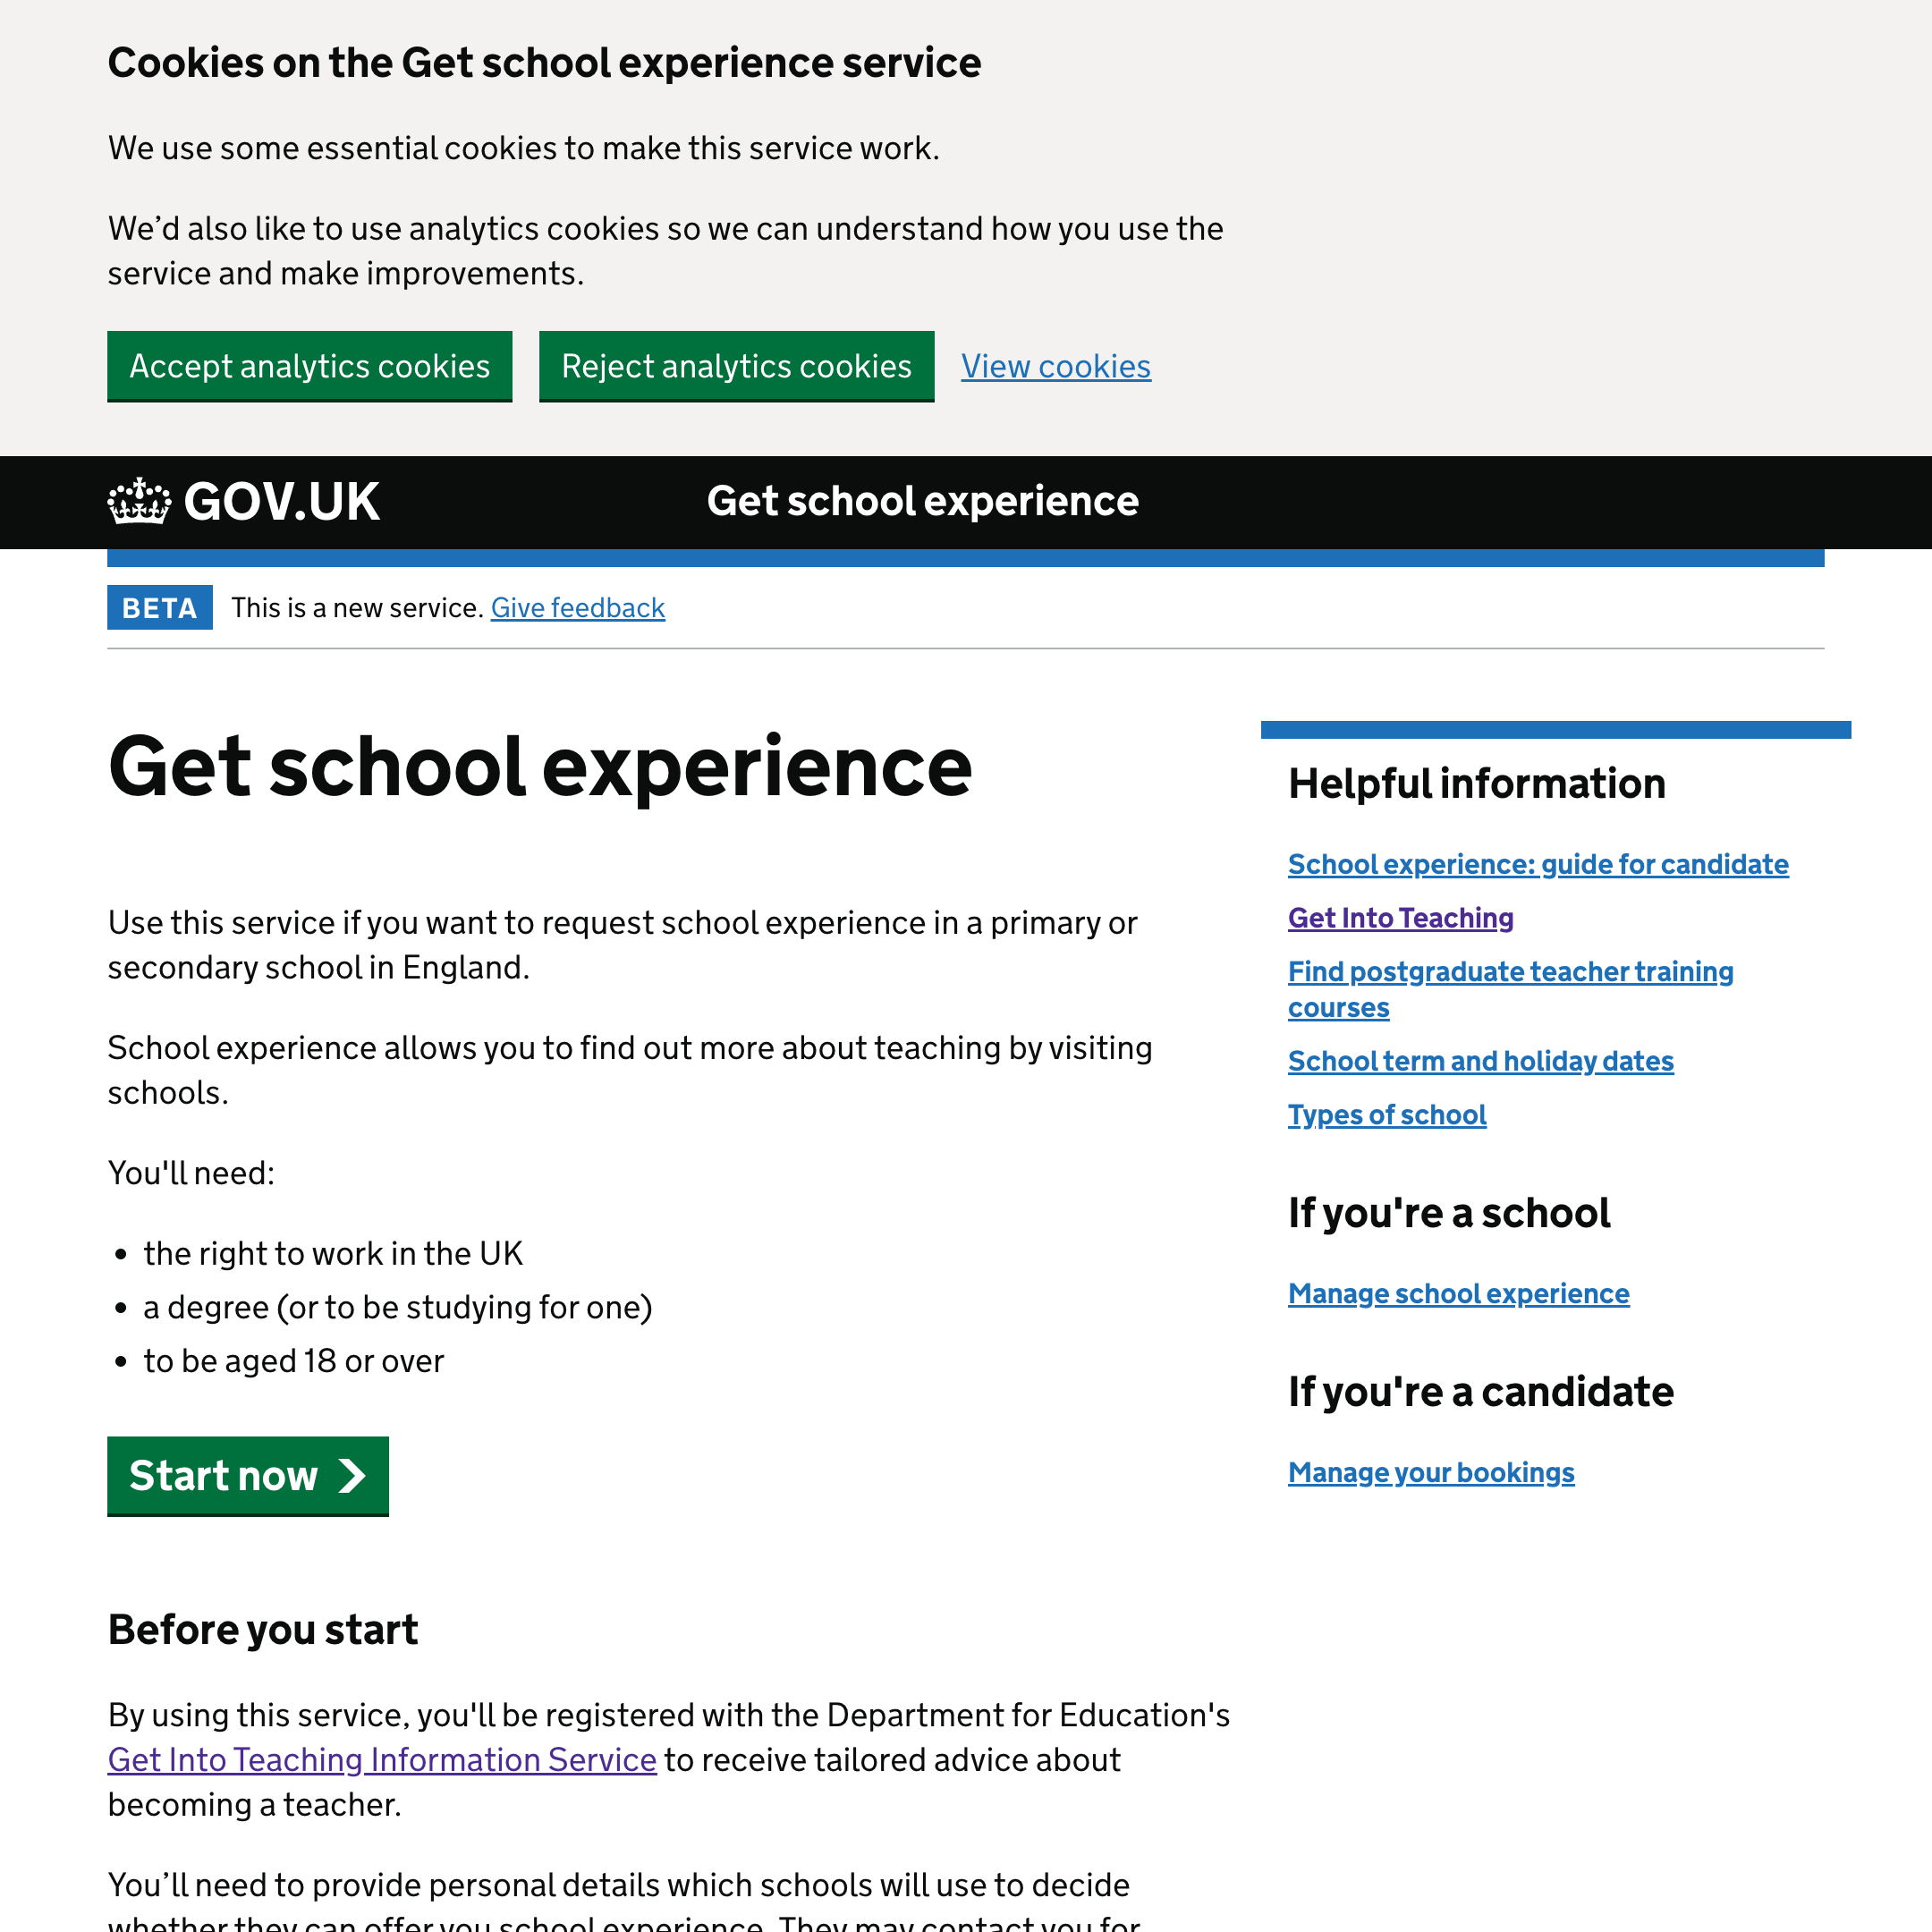 Get school experience